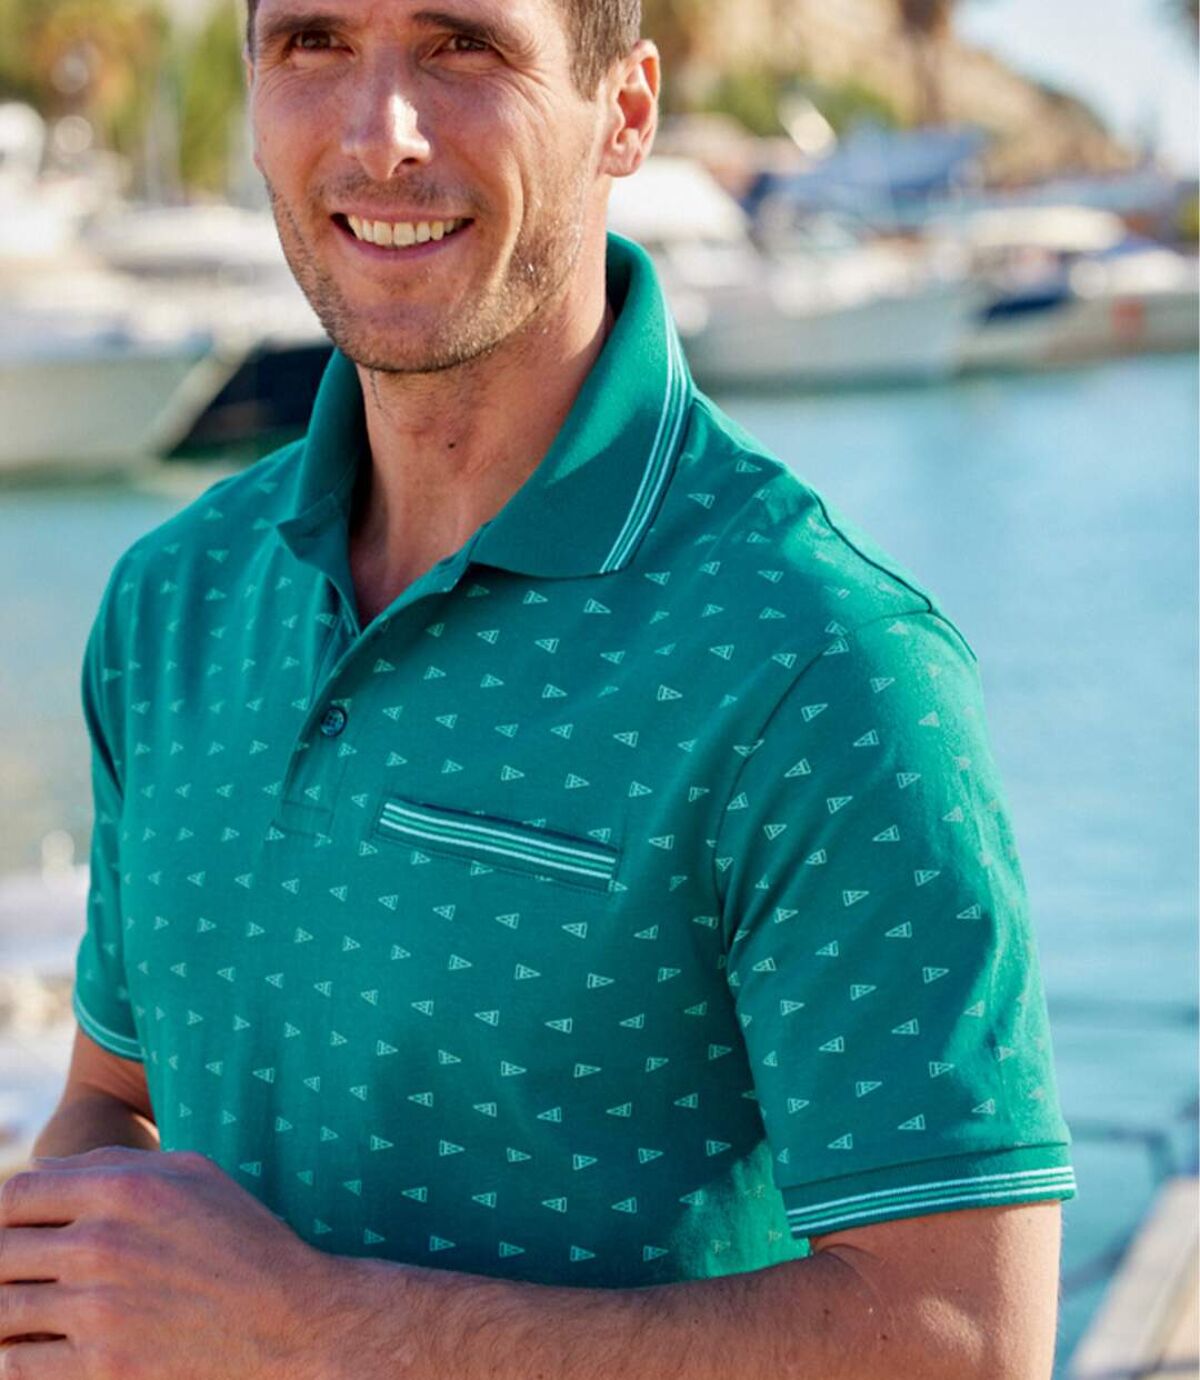 Men's Green Patterned Polo Shirt Atlas For Men